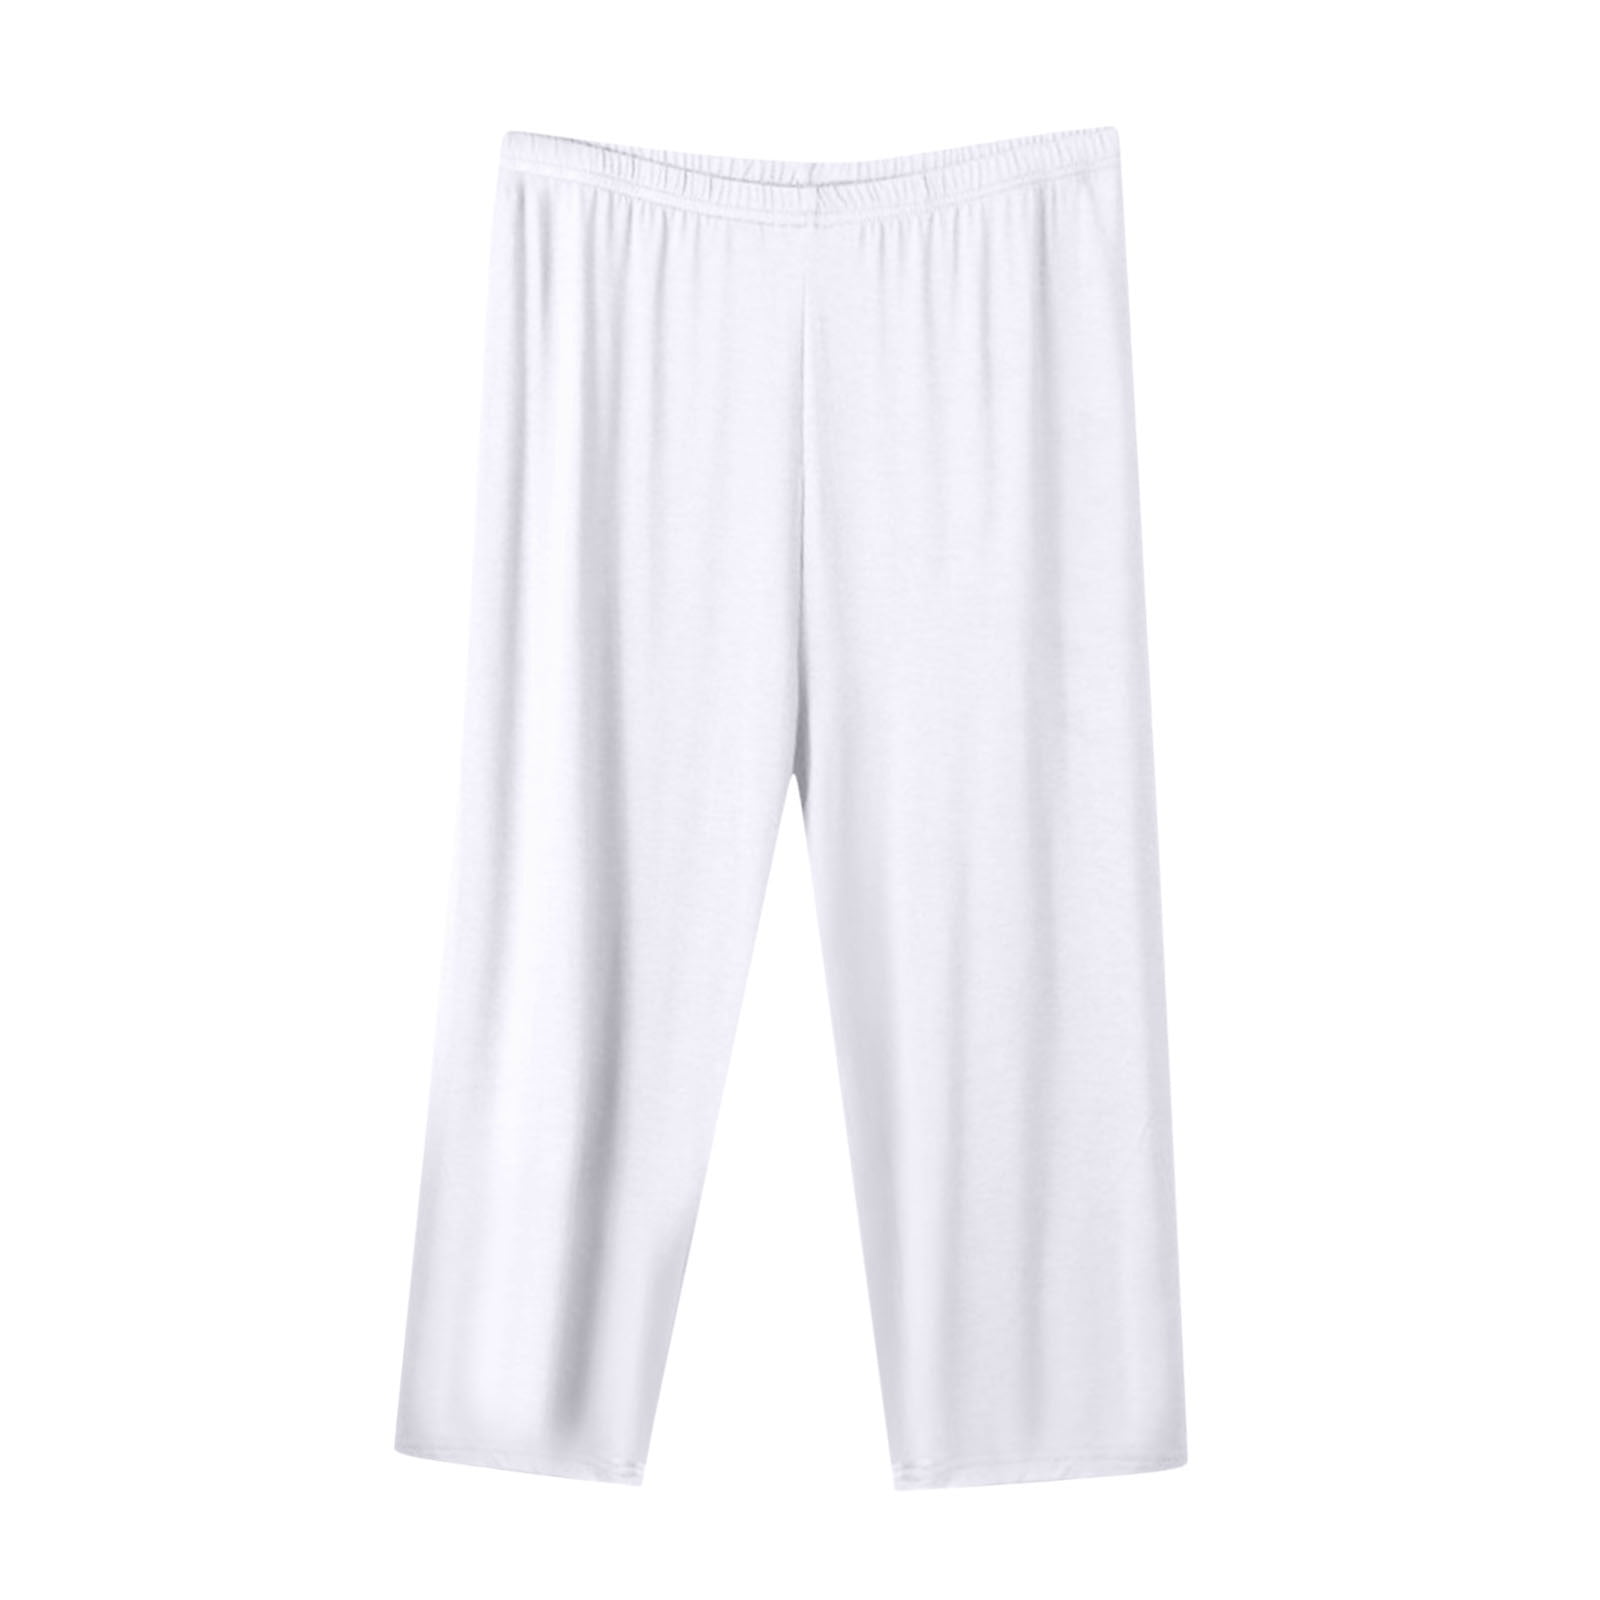 Cotton Capri Pajama Pants Womens Plus Size Elastic Waist Capris Cozy ...